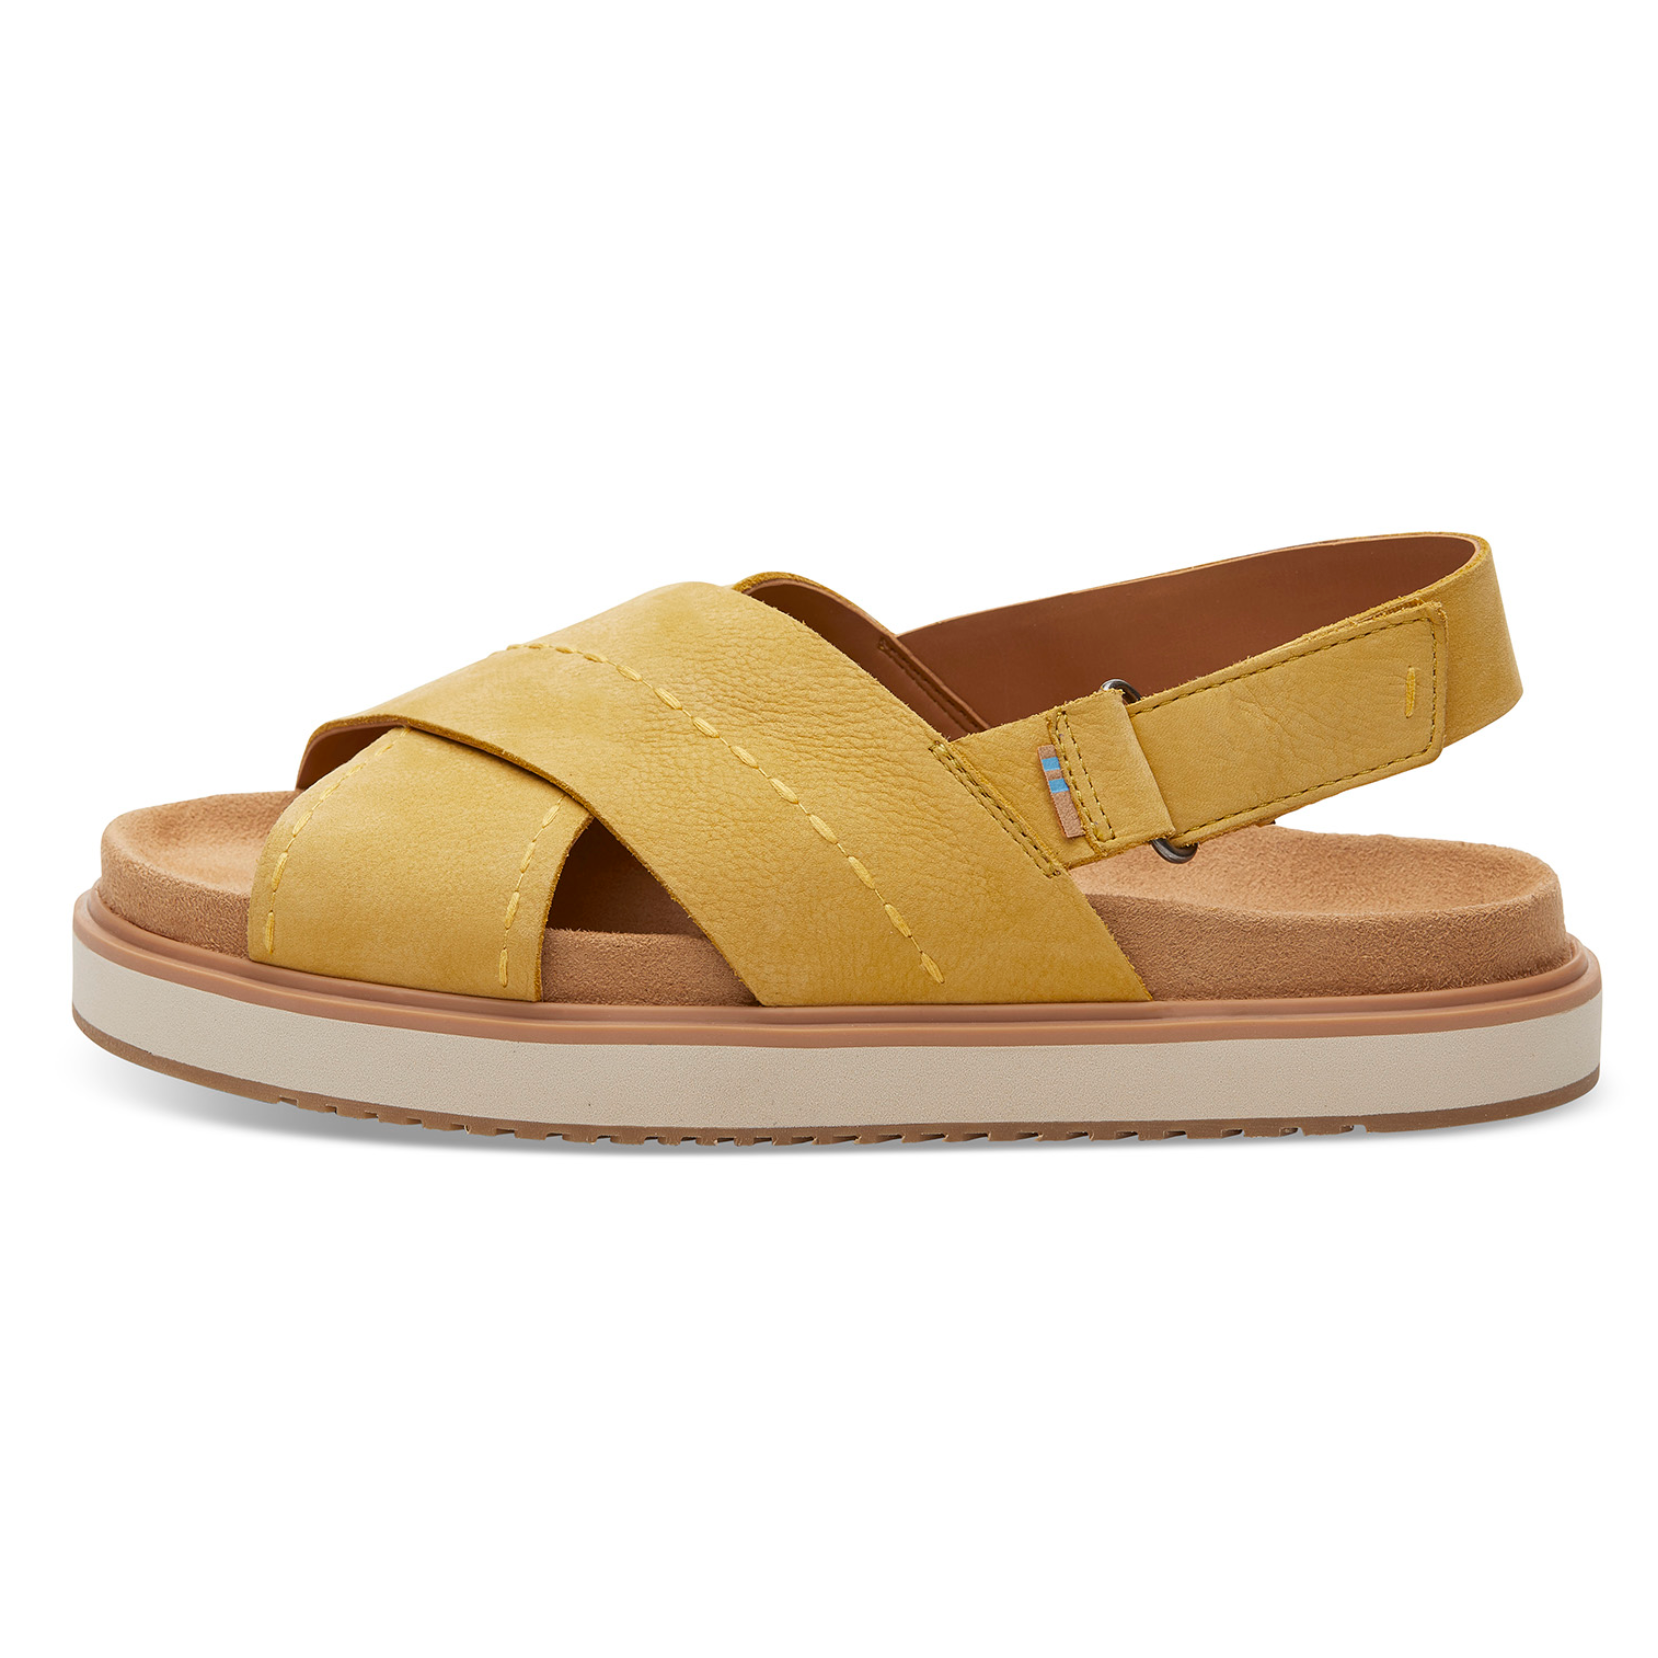 Toms-Marisa-Yellow-Suede-Sandals